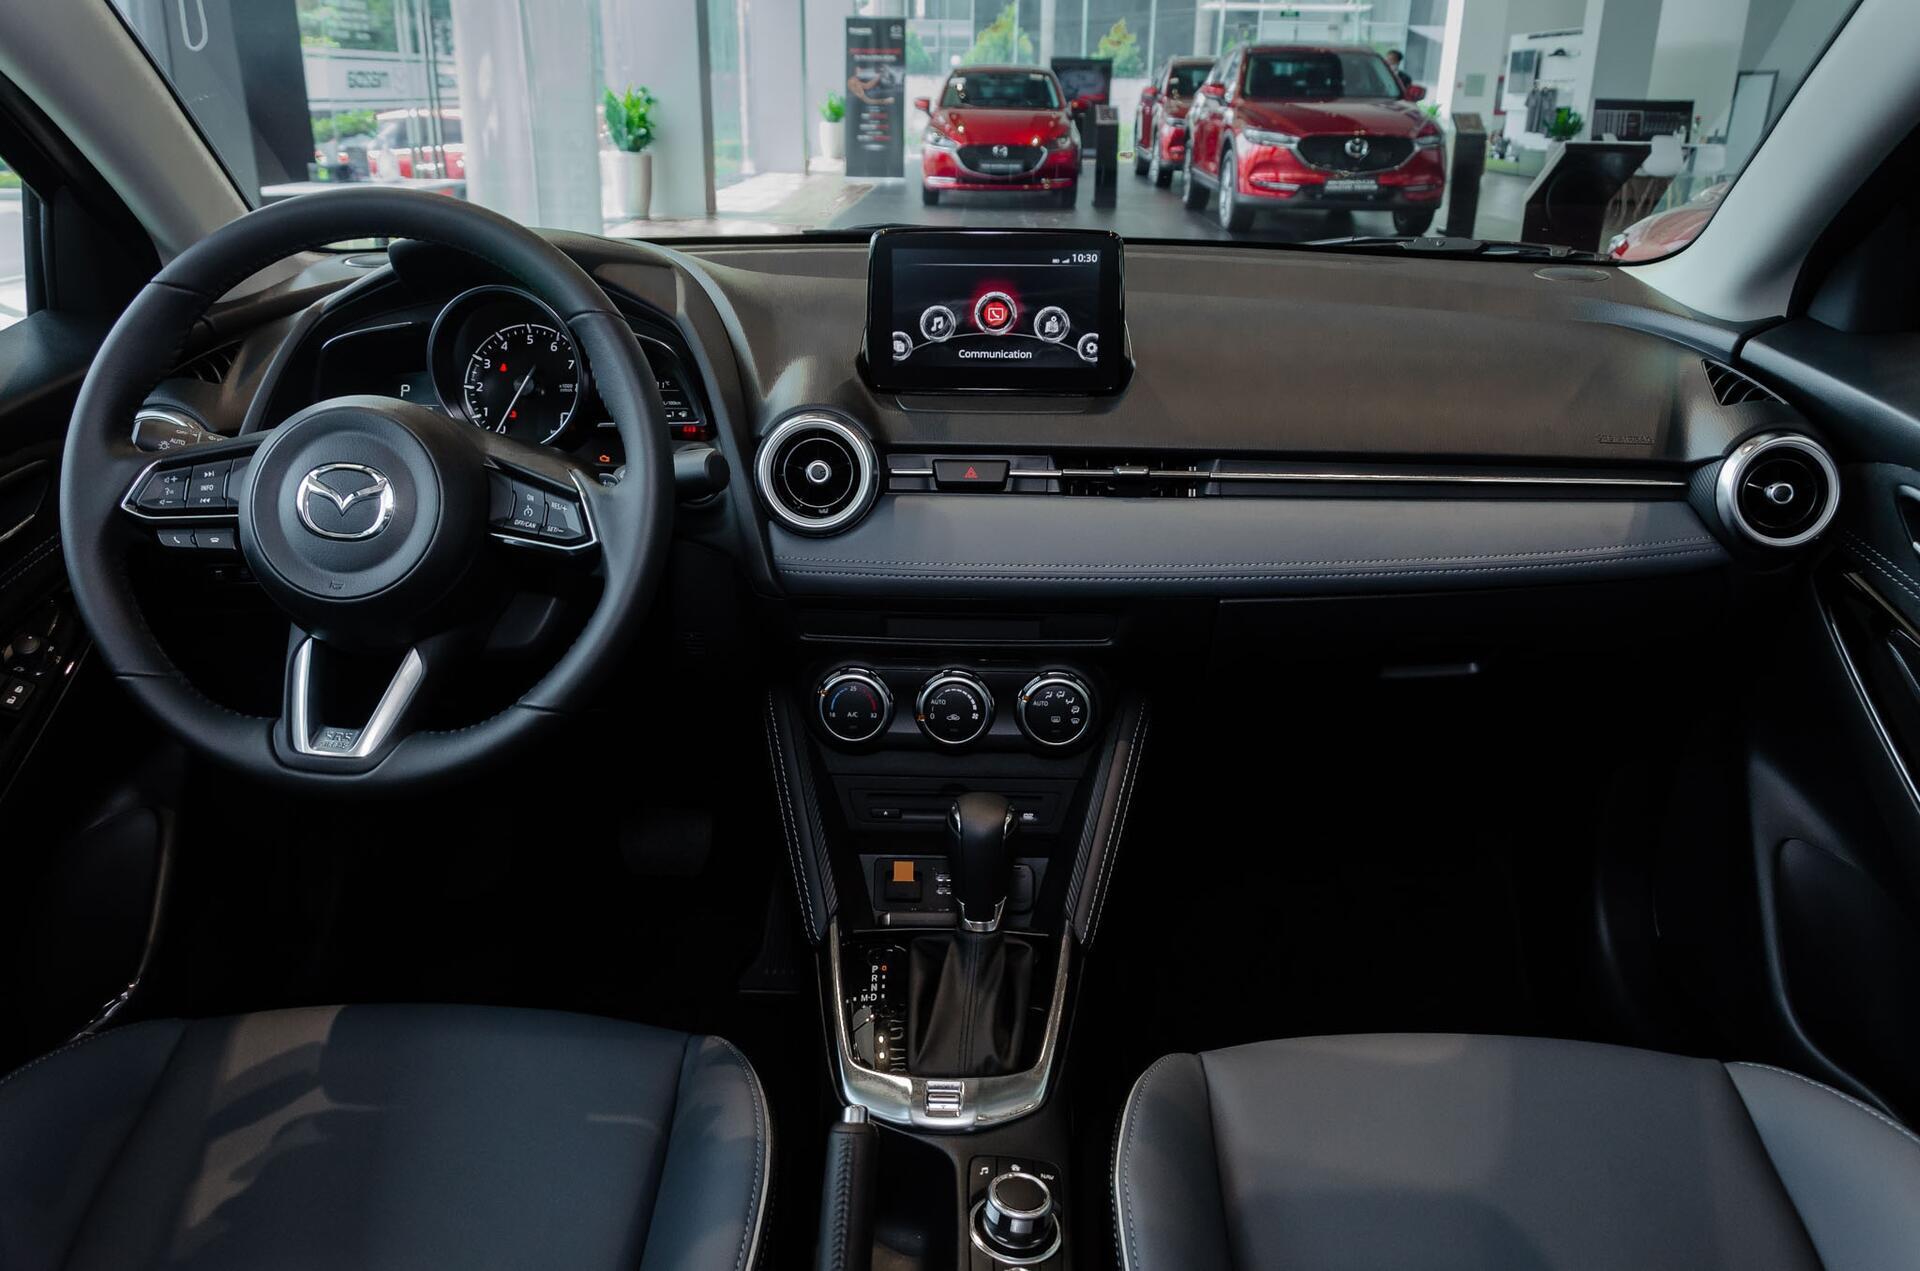 Toàn cảnh khu vực tablo của xe, được trang bị màn hình cảm ứng nhỏ nhằm đáp ứng tốt hơn các nhu cầu lái